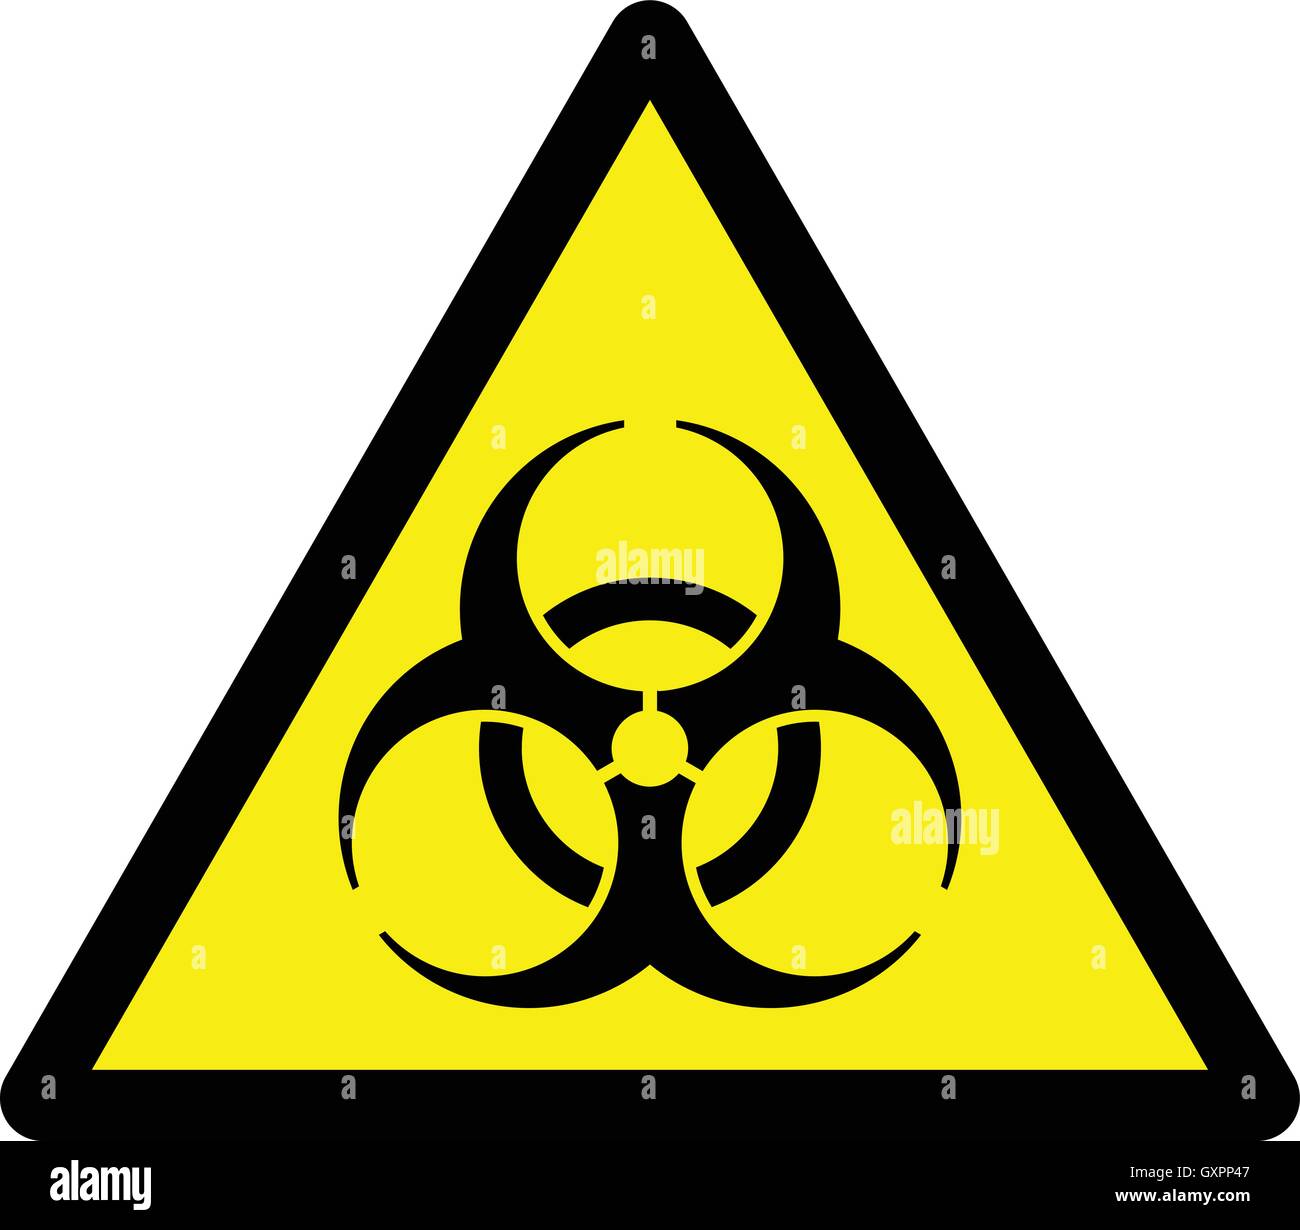 Biological risk symbol , International biohazard warning sign, bio hazard warning symbol, vector illustration. Stock Vector